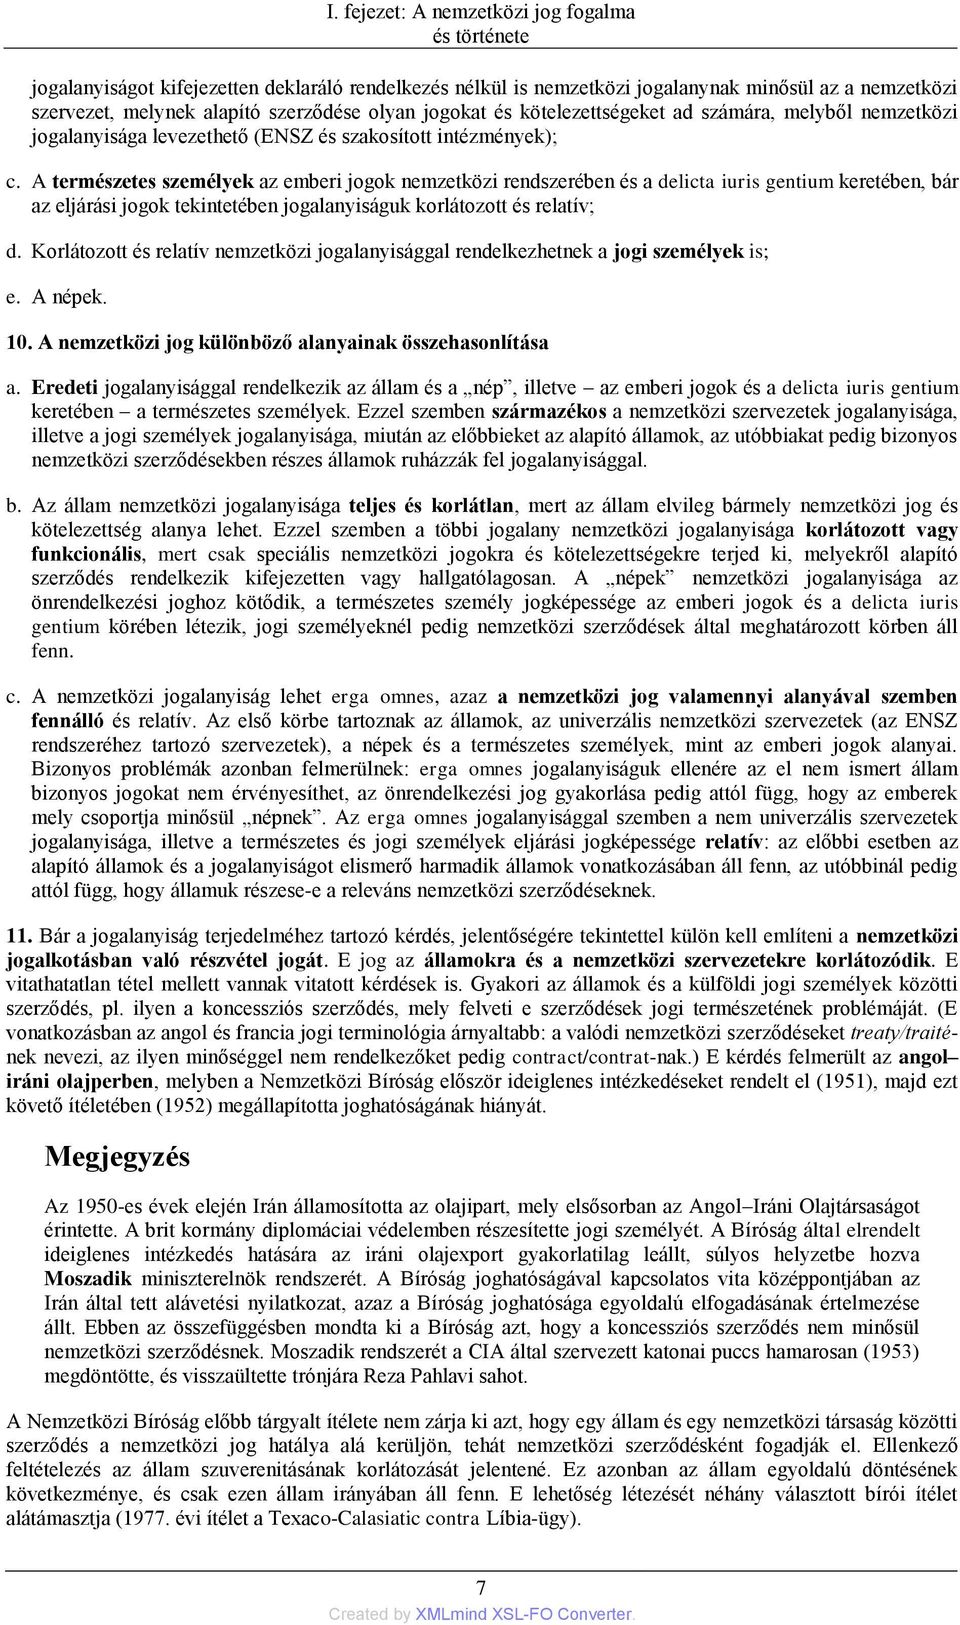 Nemzetközi jog I. Bruhács János - PDF Ingyenes letöltés